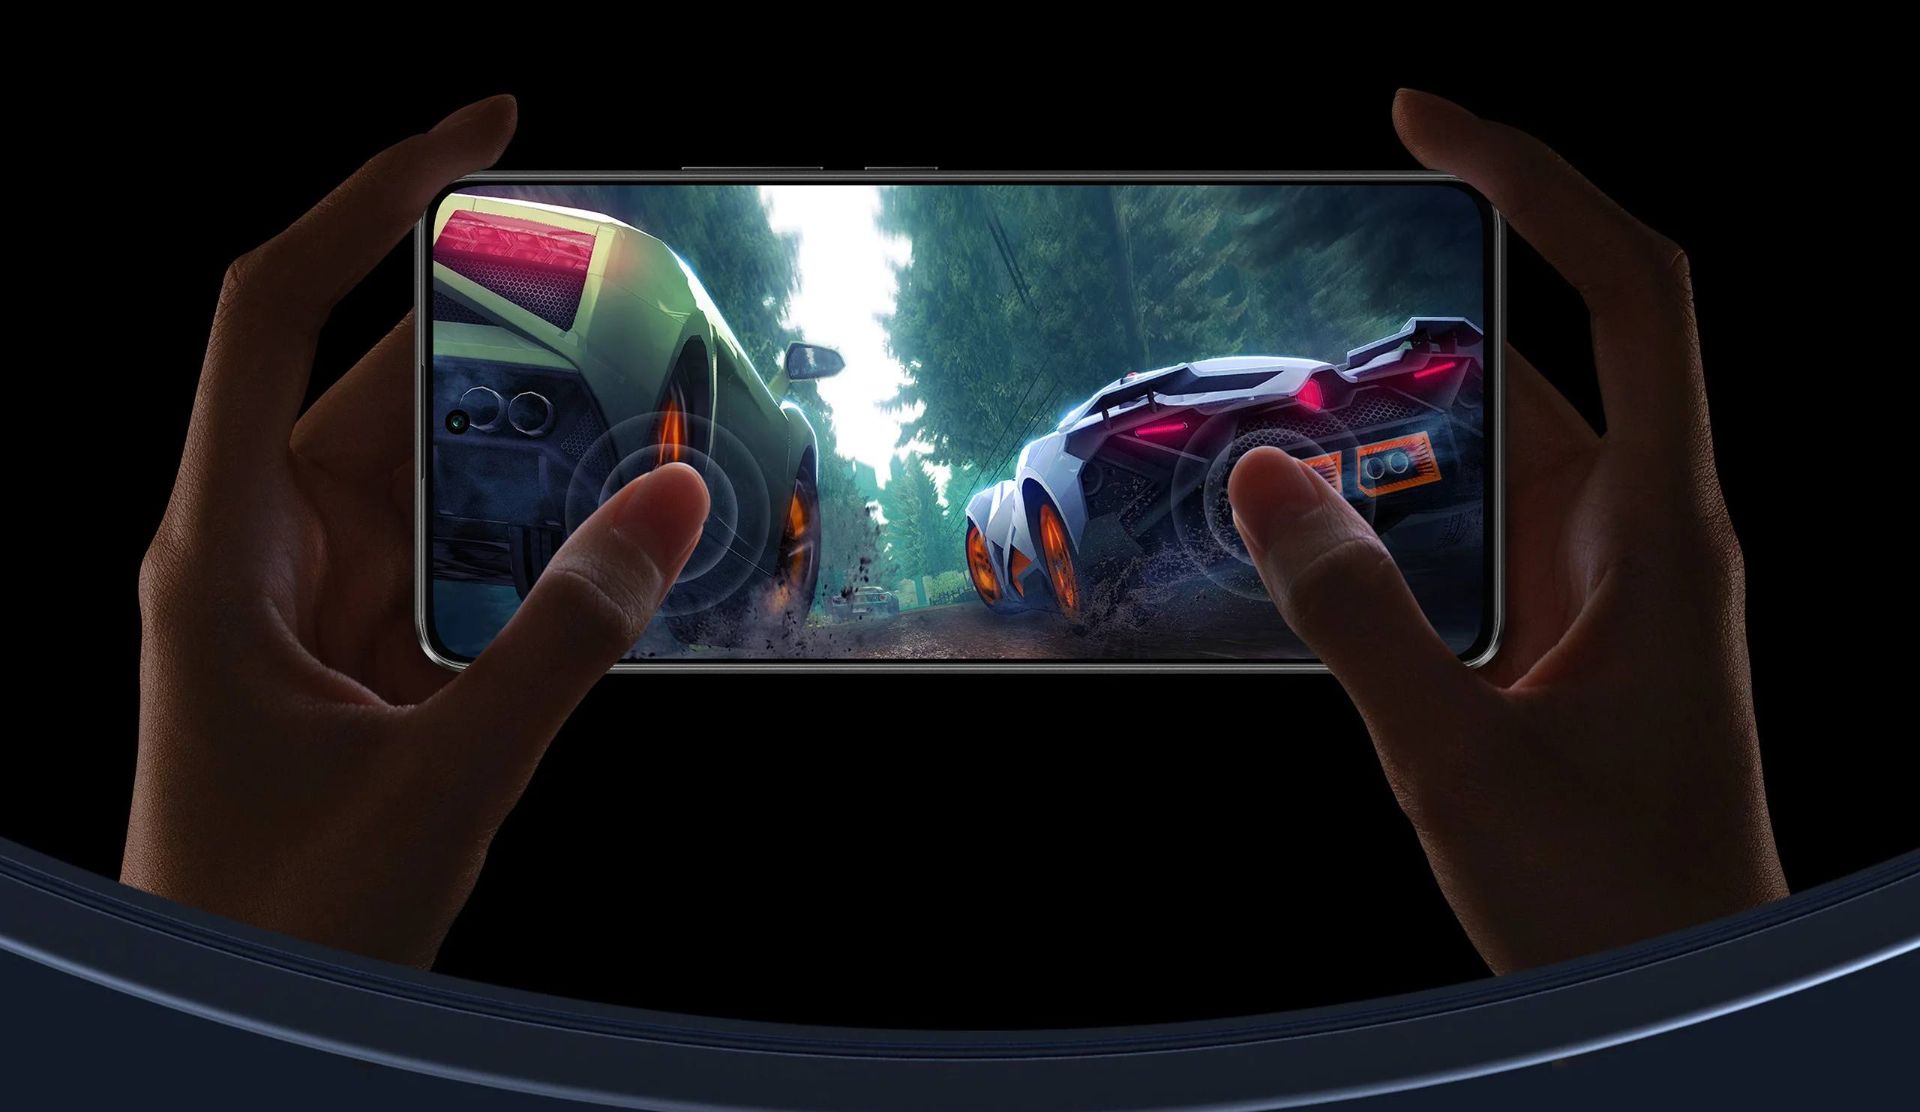 گوشی پوکو X6 در دست کاربر درحال اجرای بازی ماشین سواری